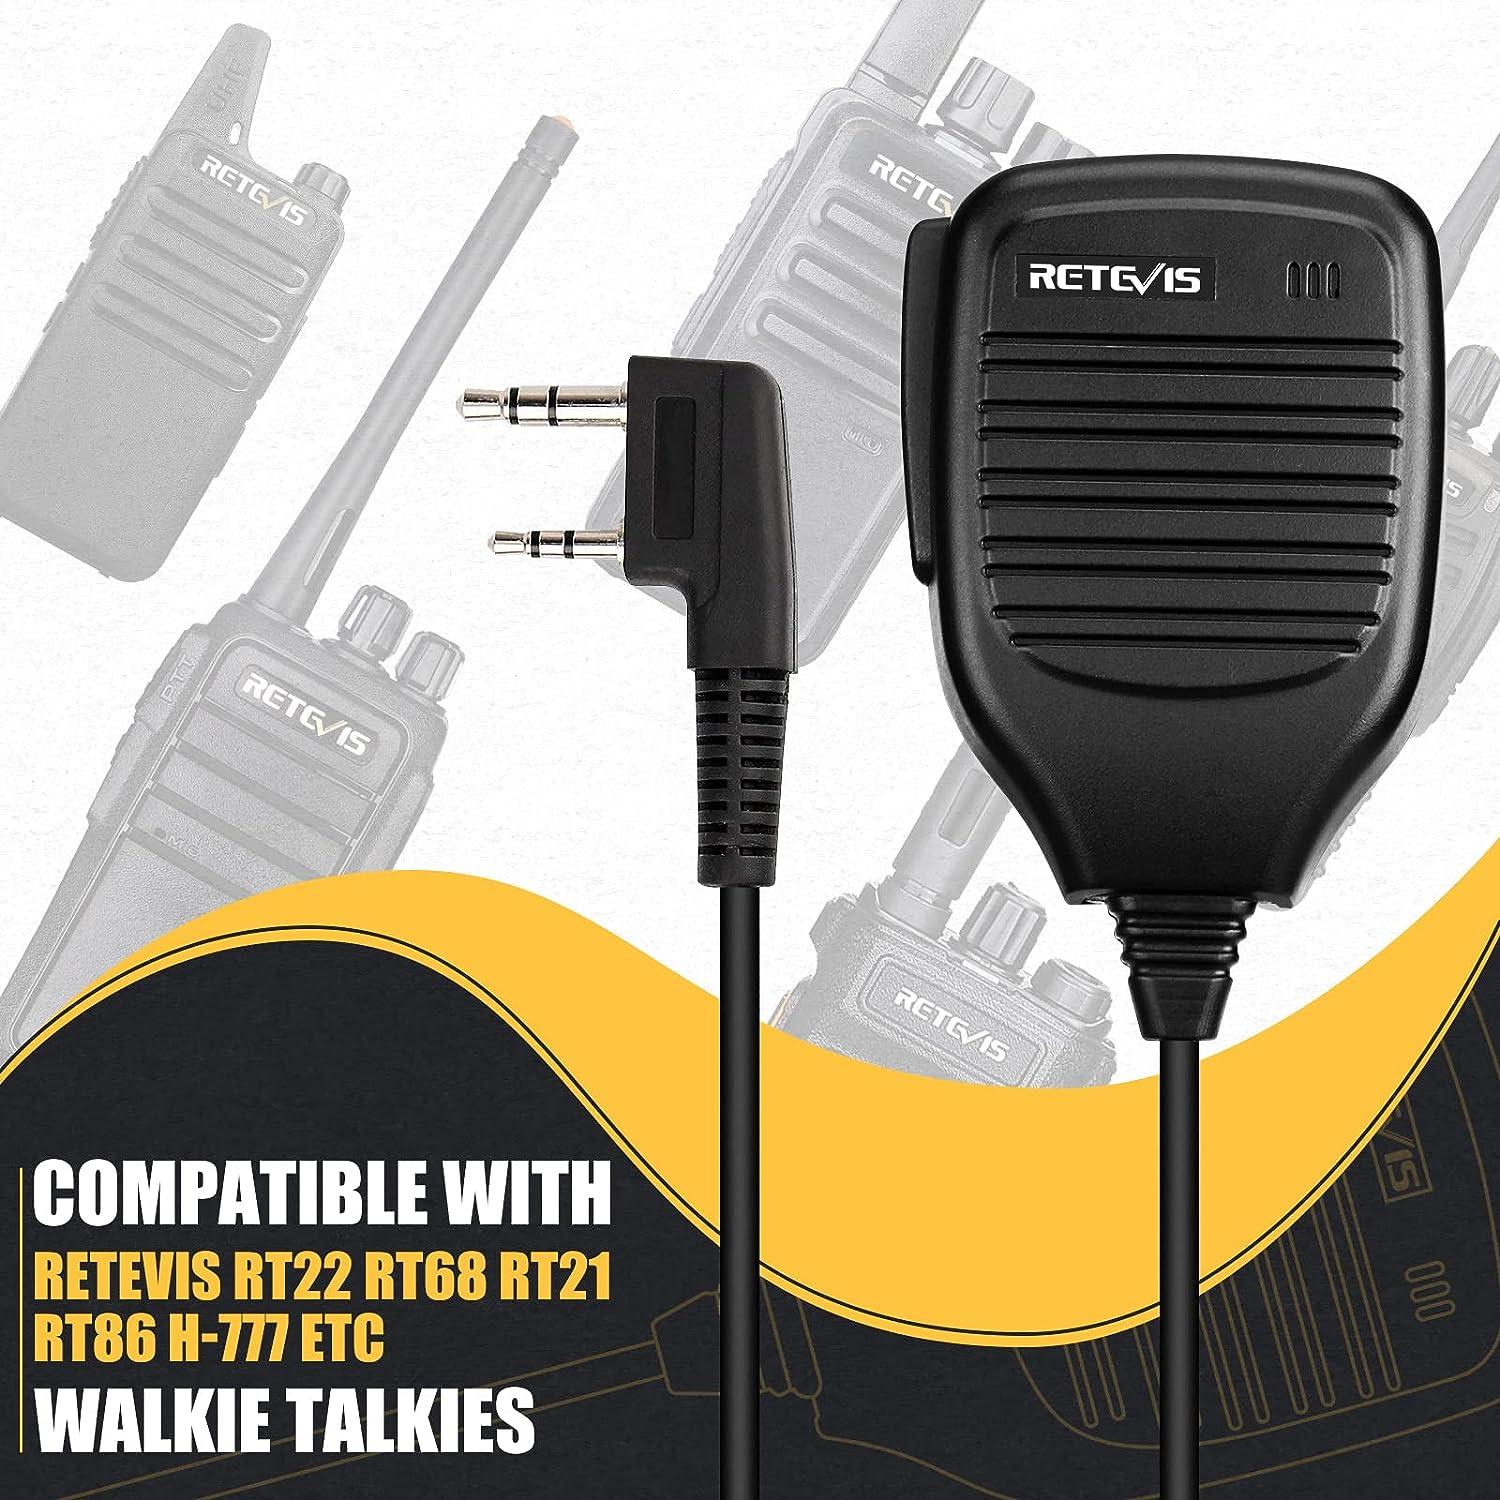  Caja de 10, auriculares Retevis Walkie Talkies con micrófono de  2 pines de tubo acústico compatible con Baofeng UV-5R Retevis H-777 RT21  RT22 Arcshell AR-5 Radio bidireccional : Electrónica